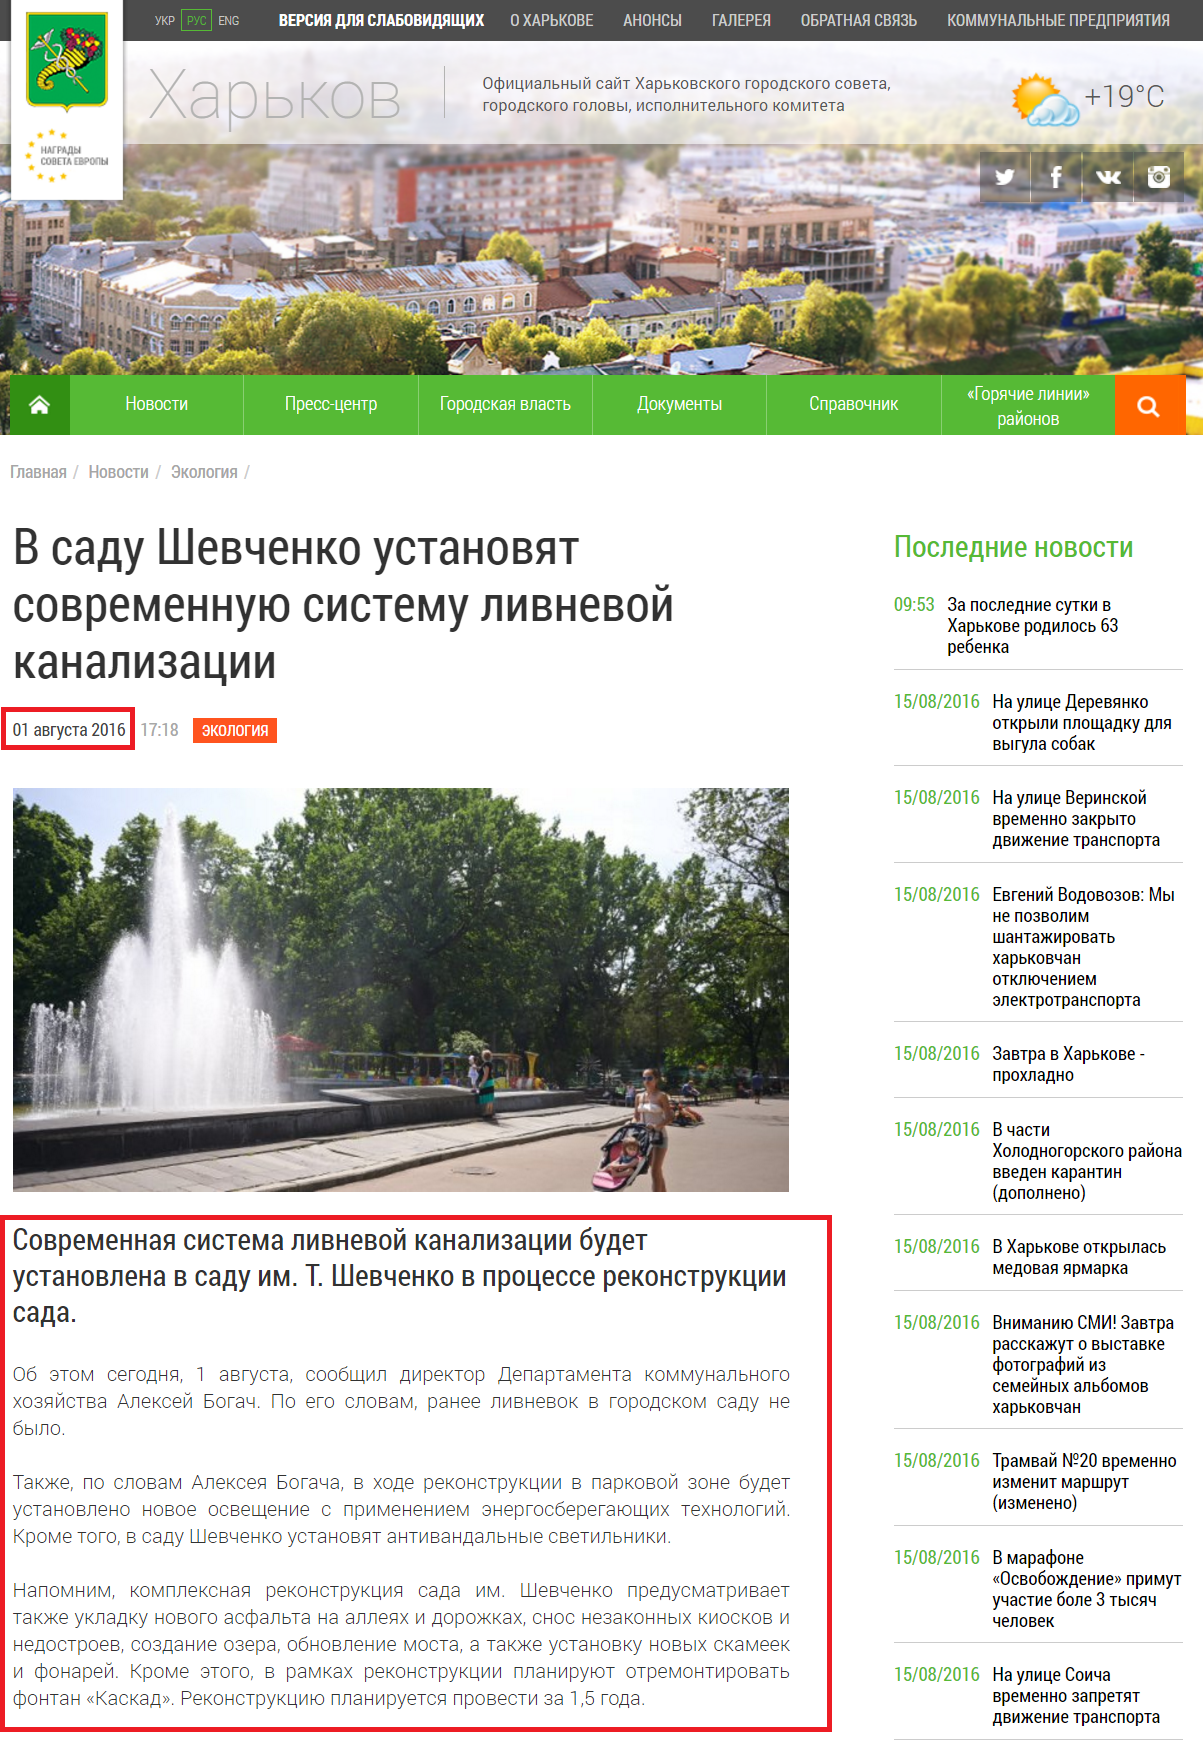 http://www.city.kharkov.ua/ru/news/u-sadu-shevchenka-vstanovlyat-suchasnu-sistemu-zlivovoi-kanalizatsii-32602.html